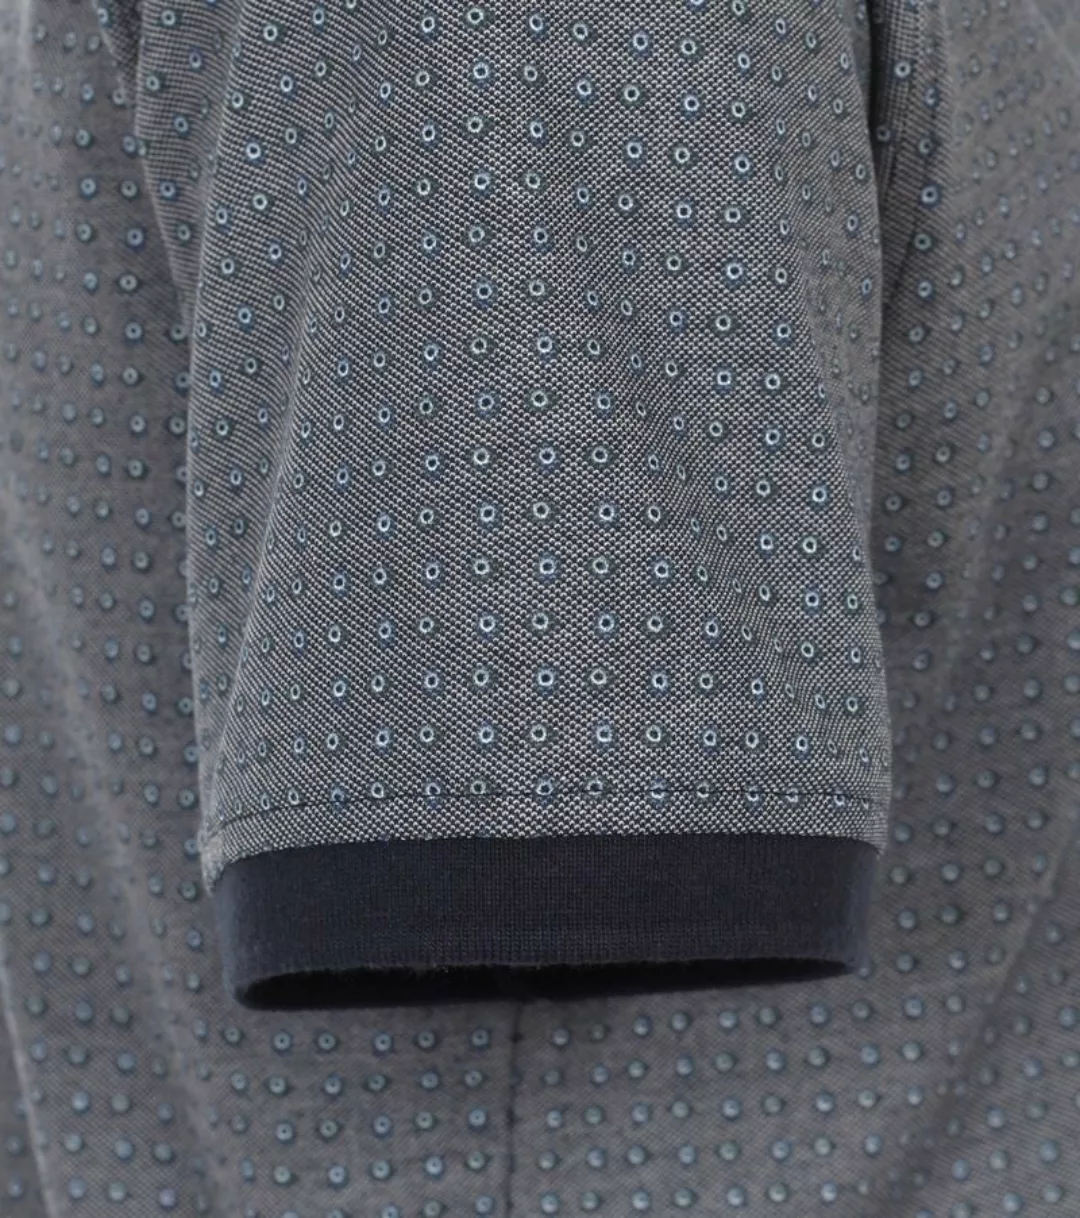 Casa Moda Poloshirt Druck Grau Blau - Größe XL günstig online kaufen